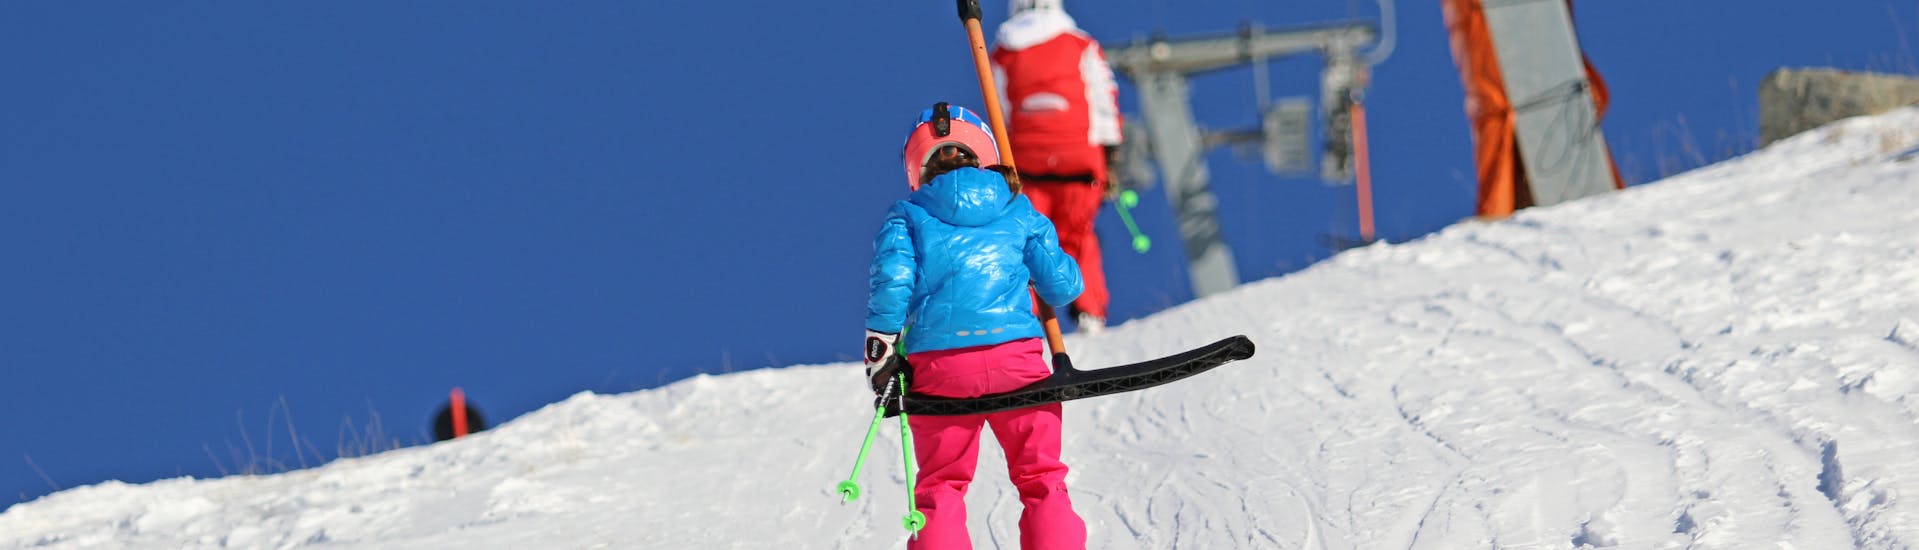 Kids Ski Lessons (4-14 y.) + Ski Hire Package for Beginners - Nauders.